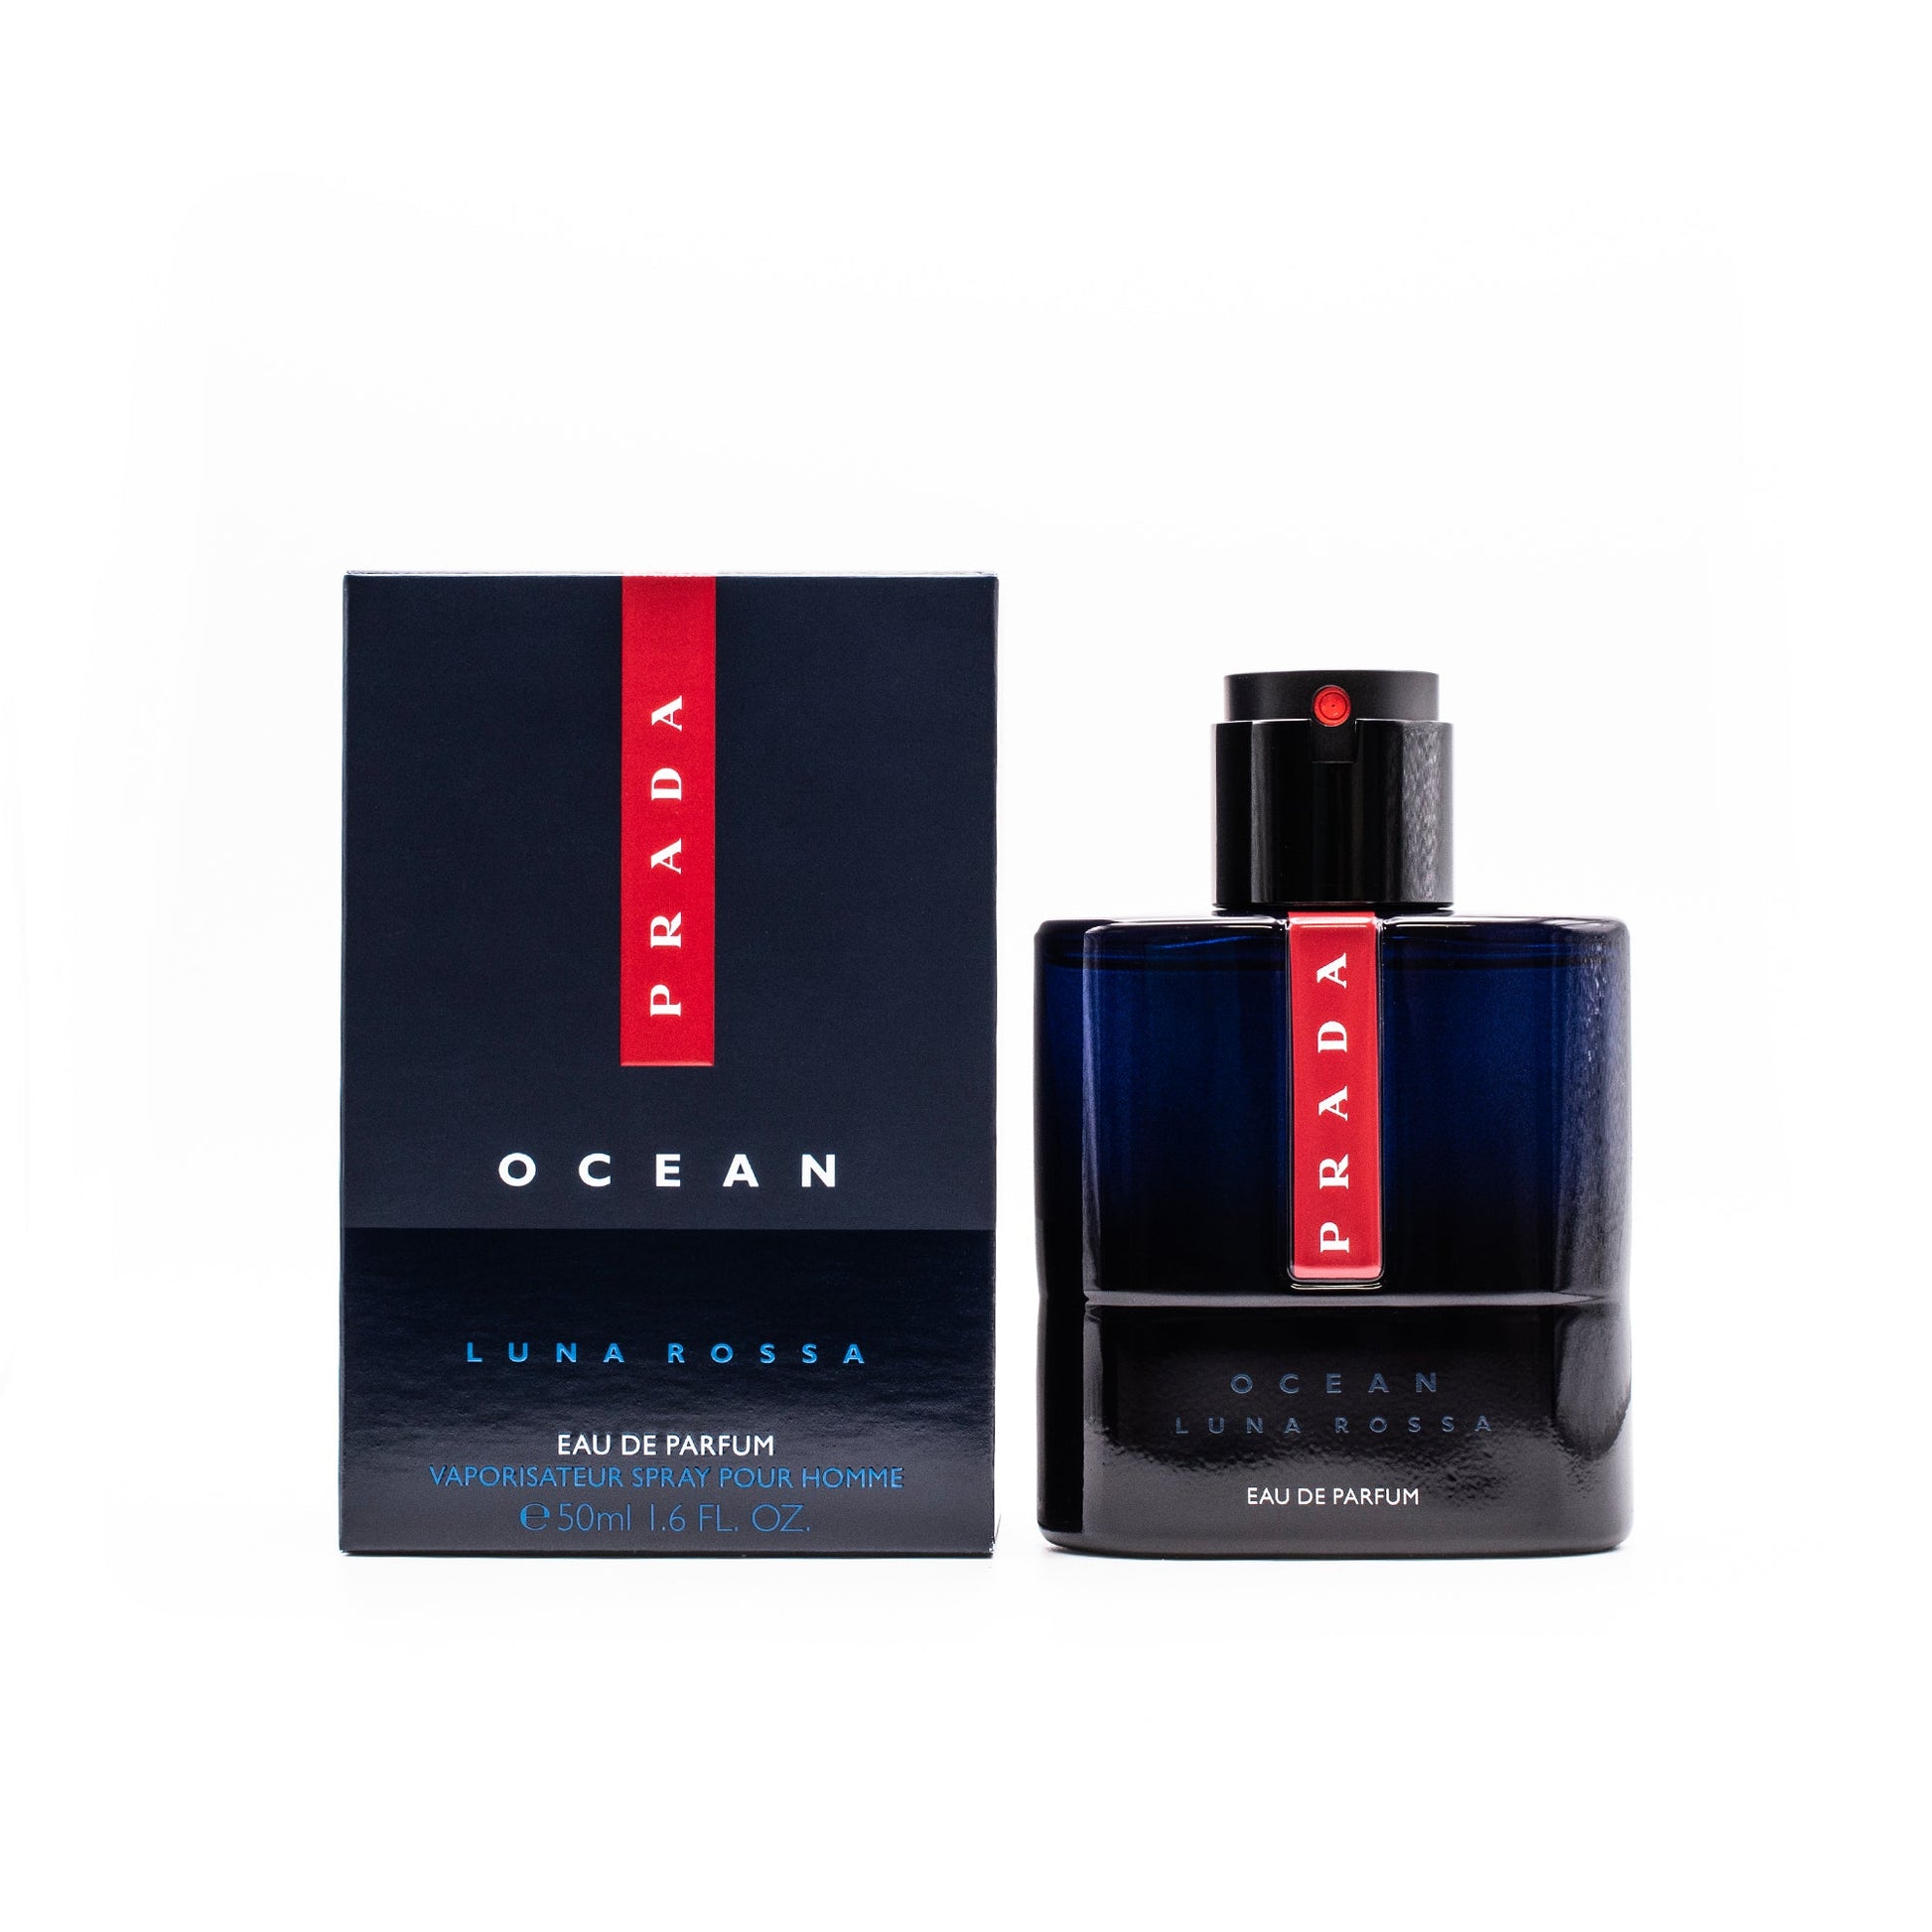 Luna Rossa Ocean For Men Eau De Parfum Spray by Prada, Product image 1